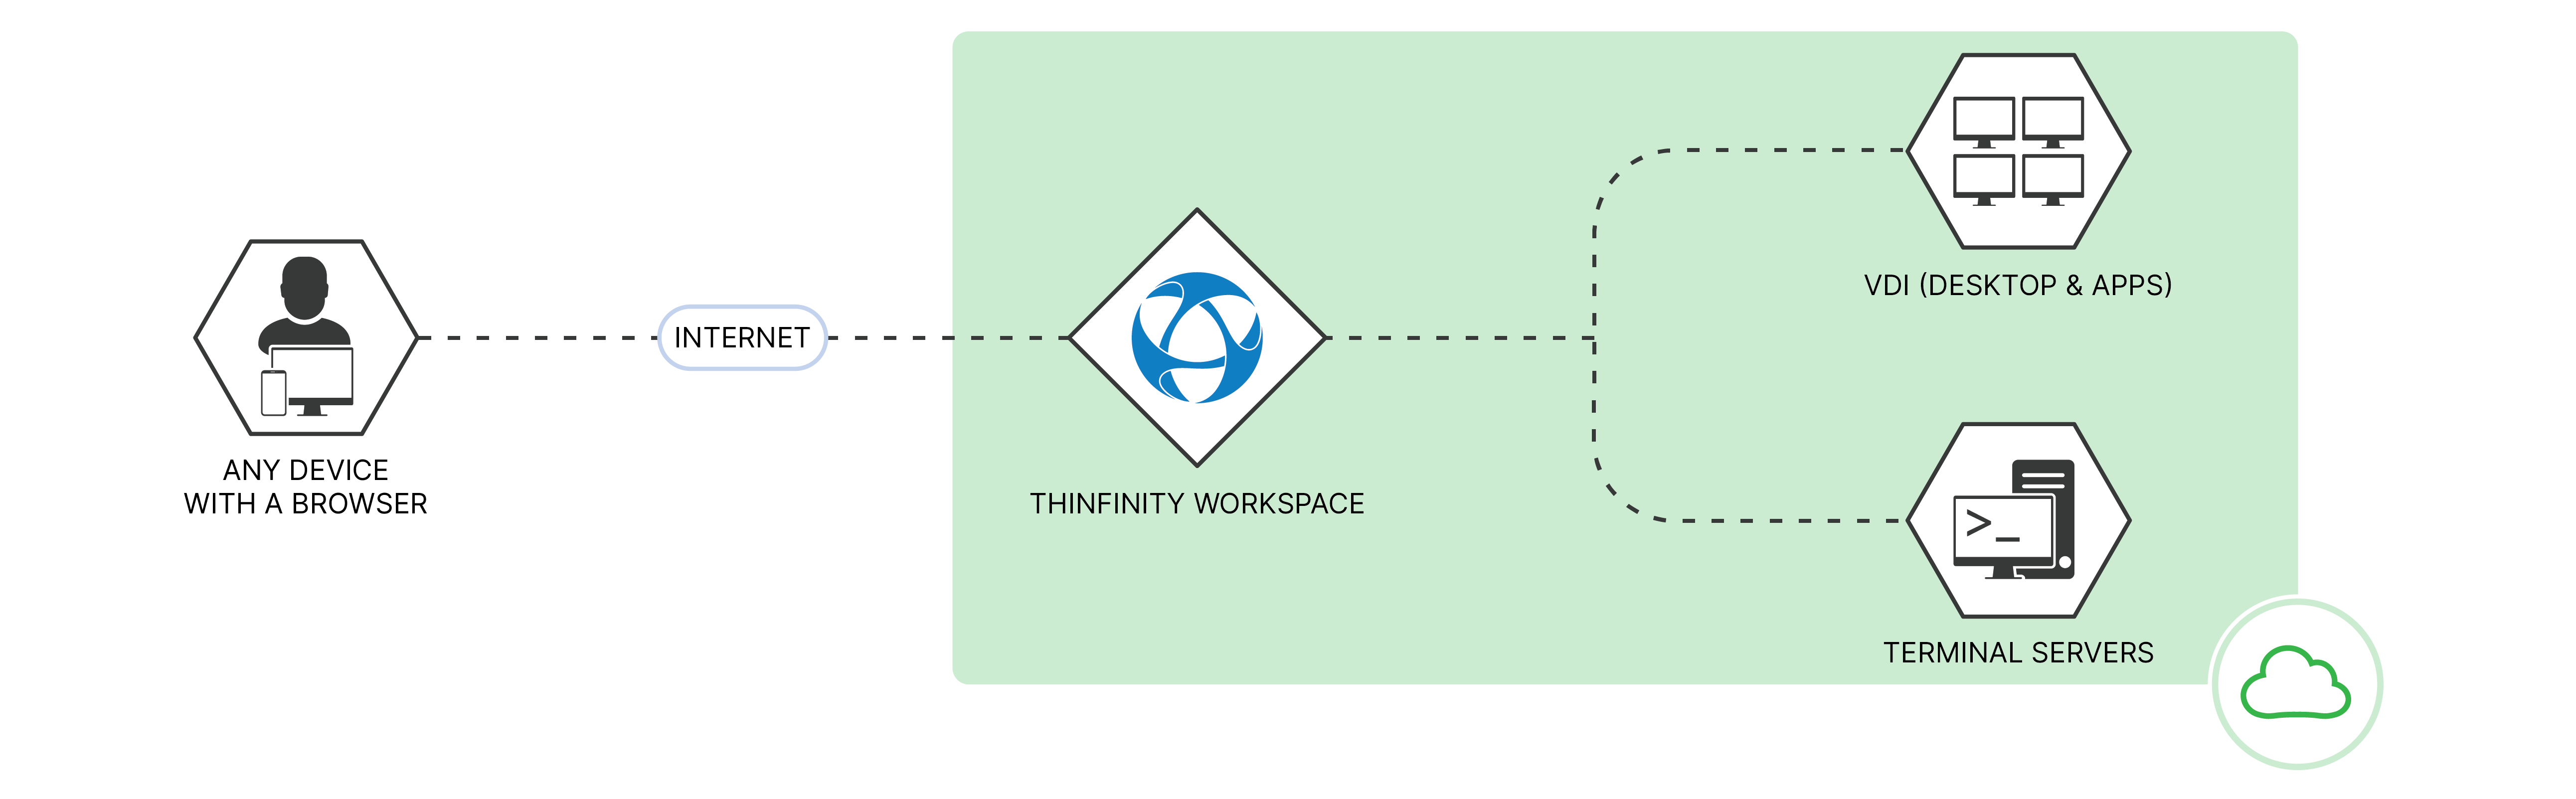 Thinfinity-espacio de trabajo-nube